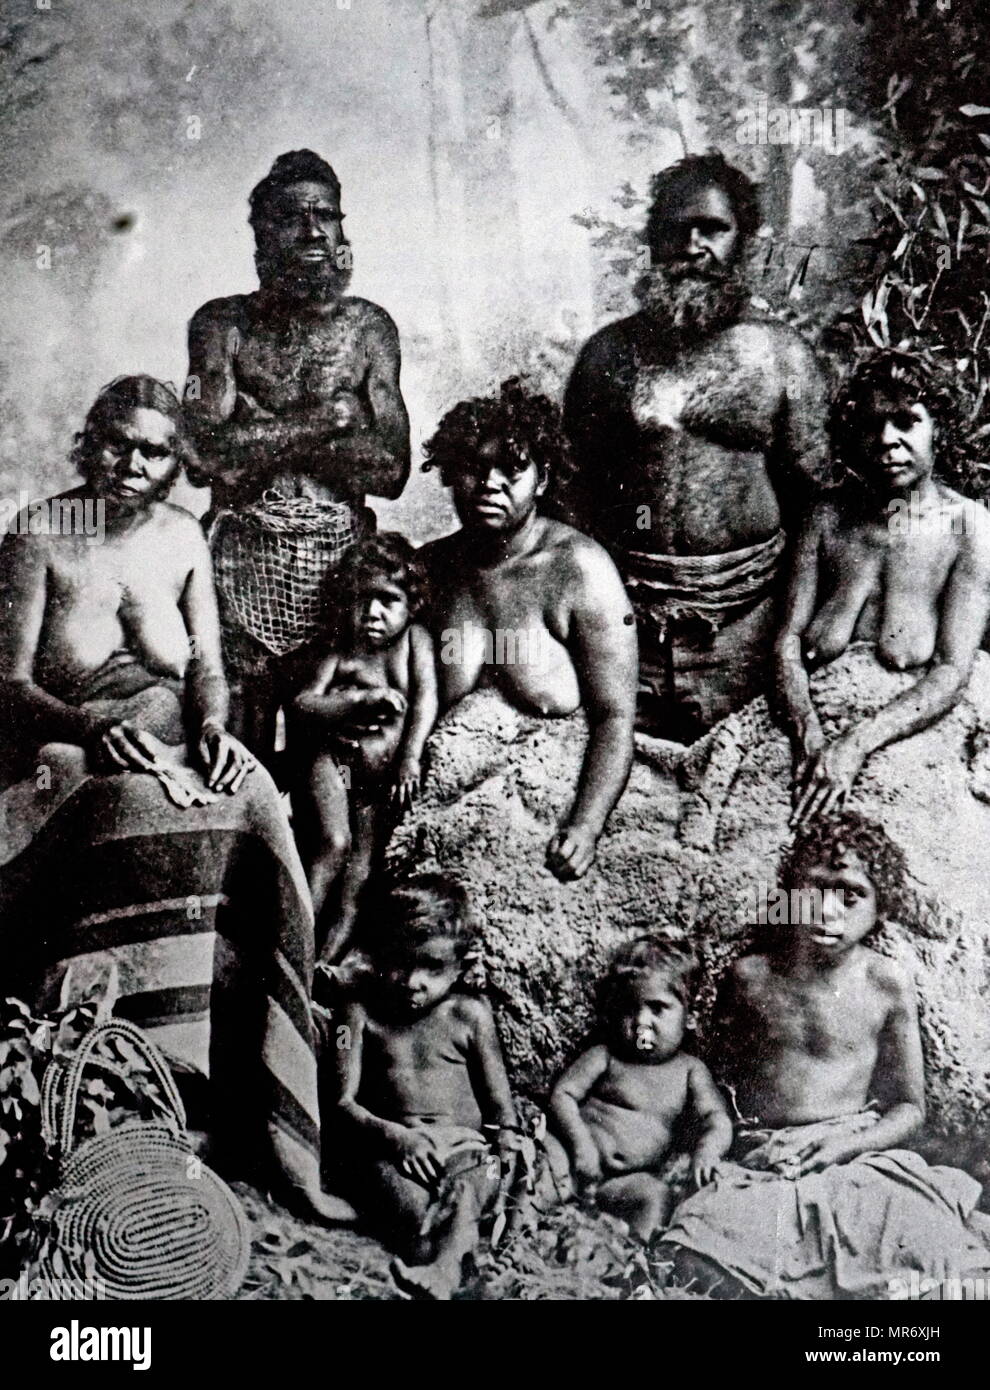 Ritratto fotografico di un gruppo di indigeni australiani. Datata del XIX secolo Foto Stock